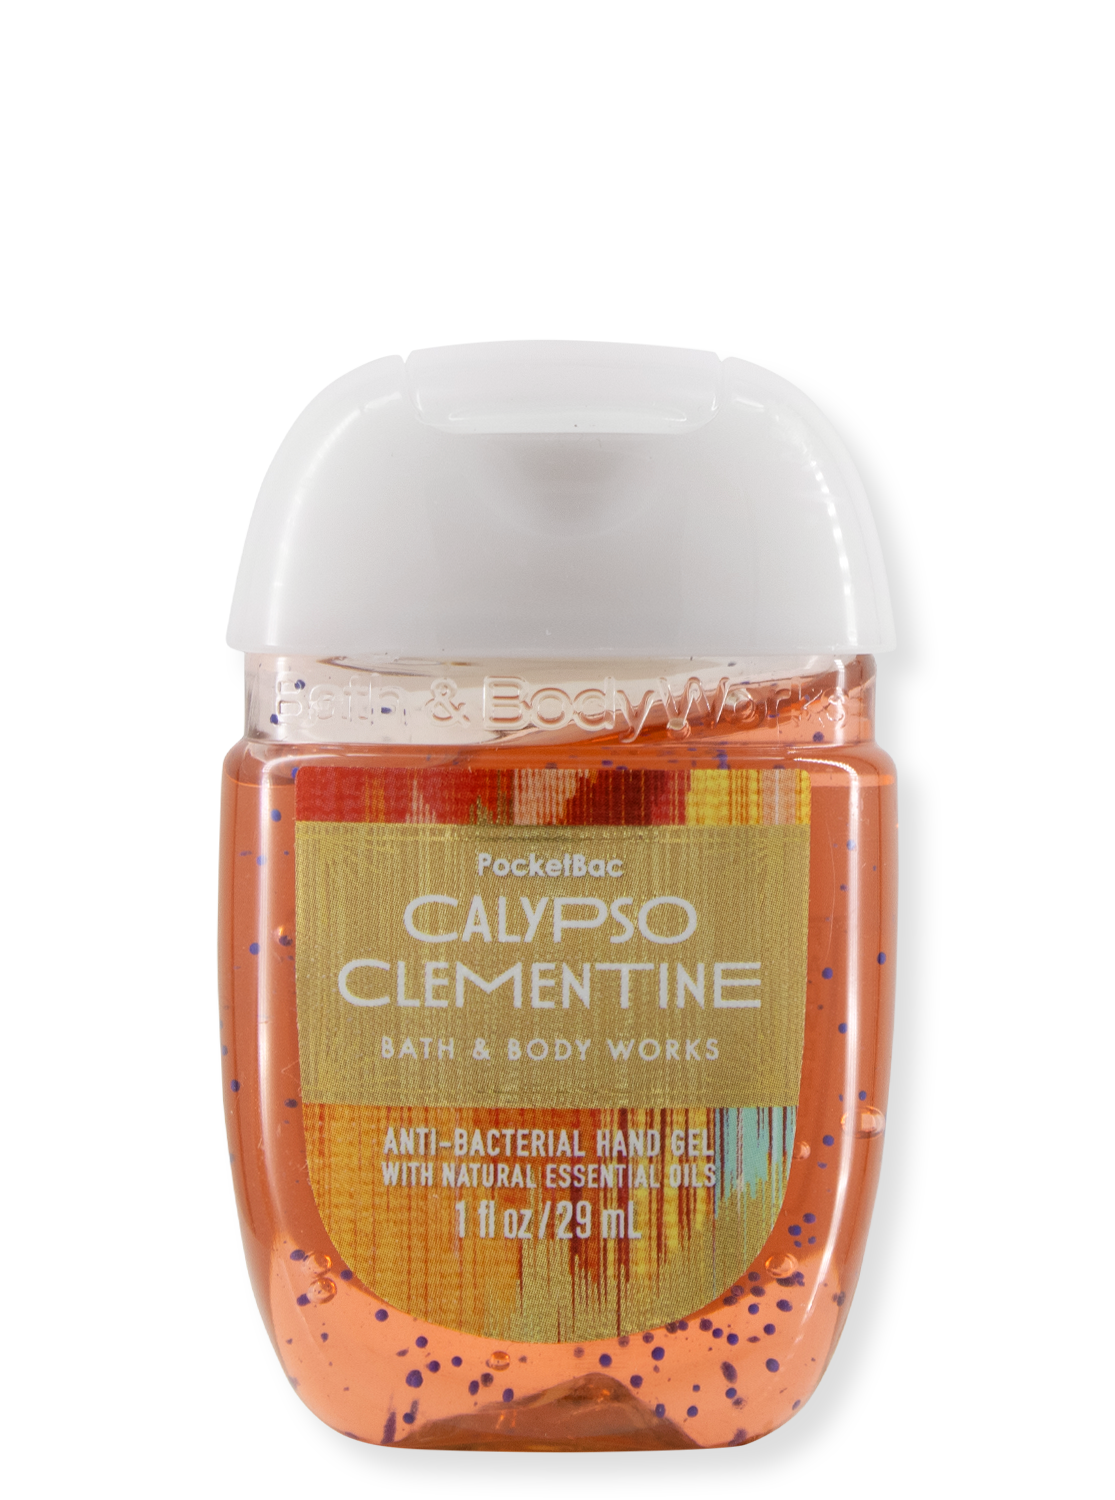 Gel de désinfection des mains - Calypso Clementine - Édition limitée - 29 ml